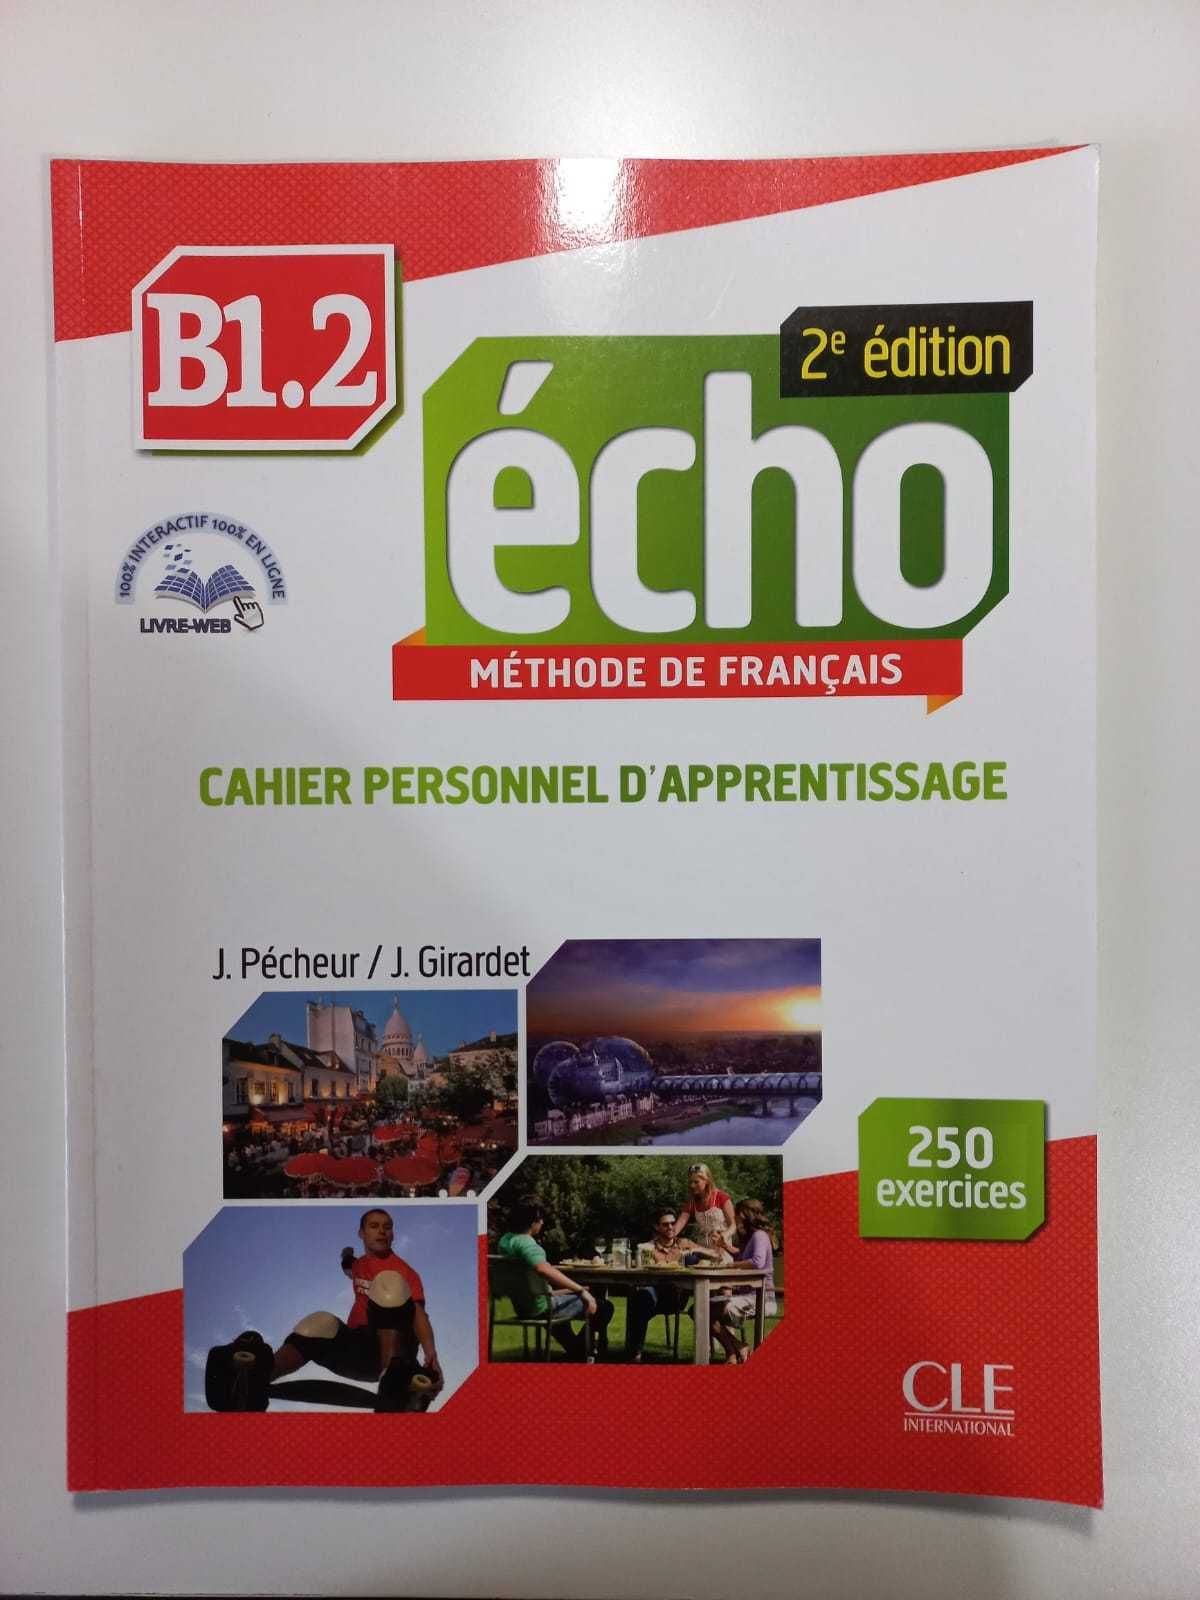 Manual de Francês B1.2